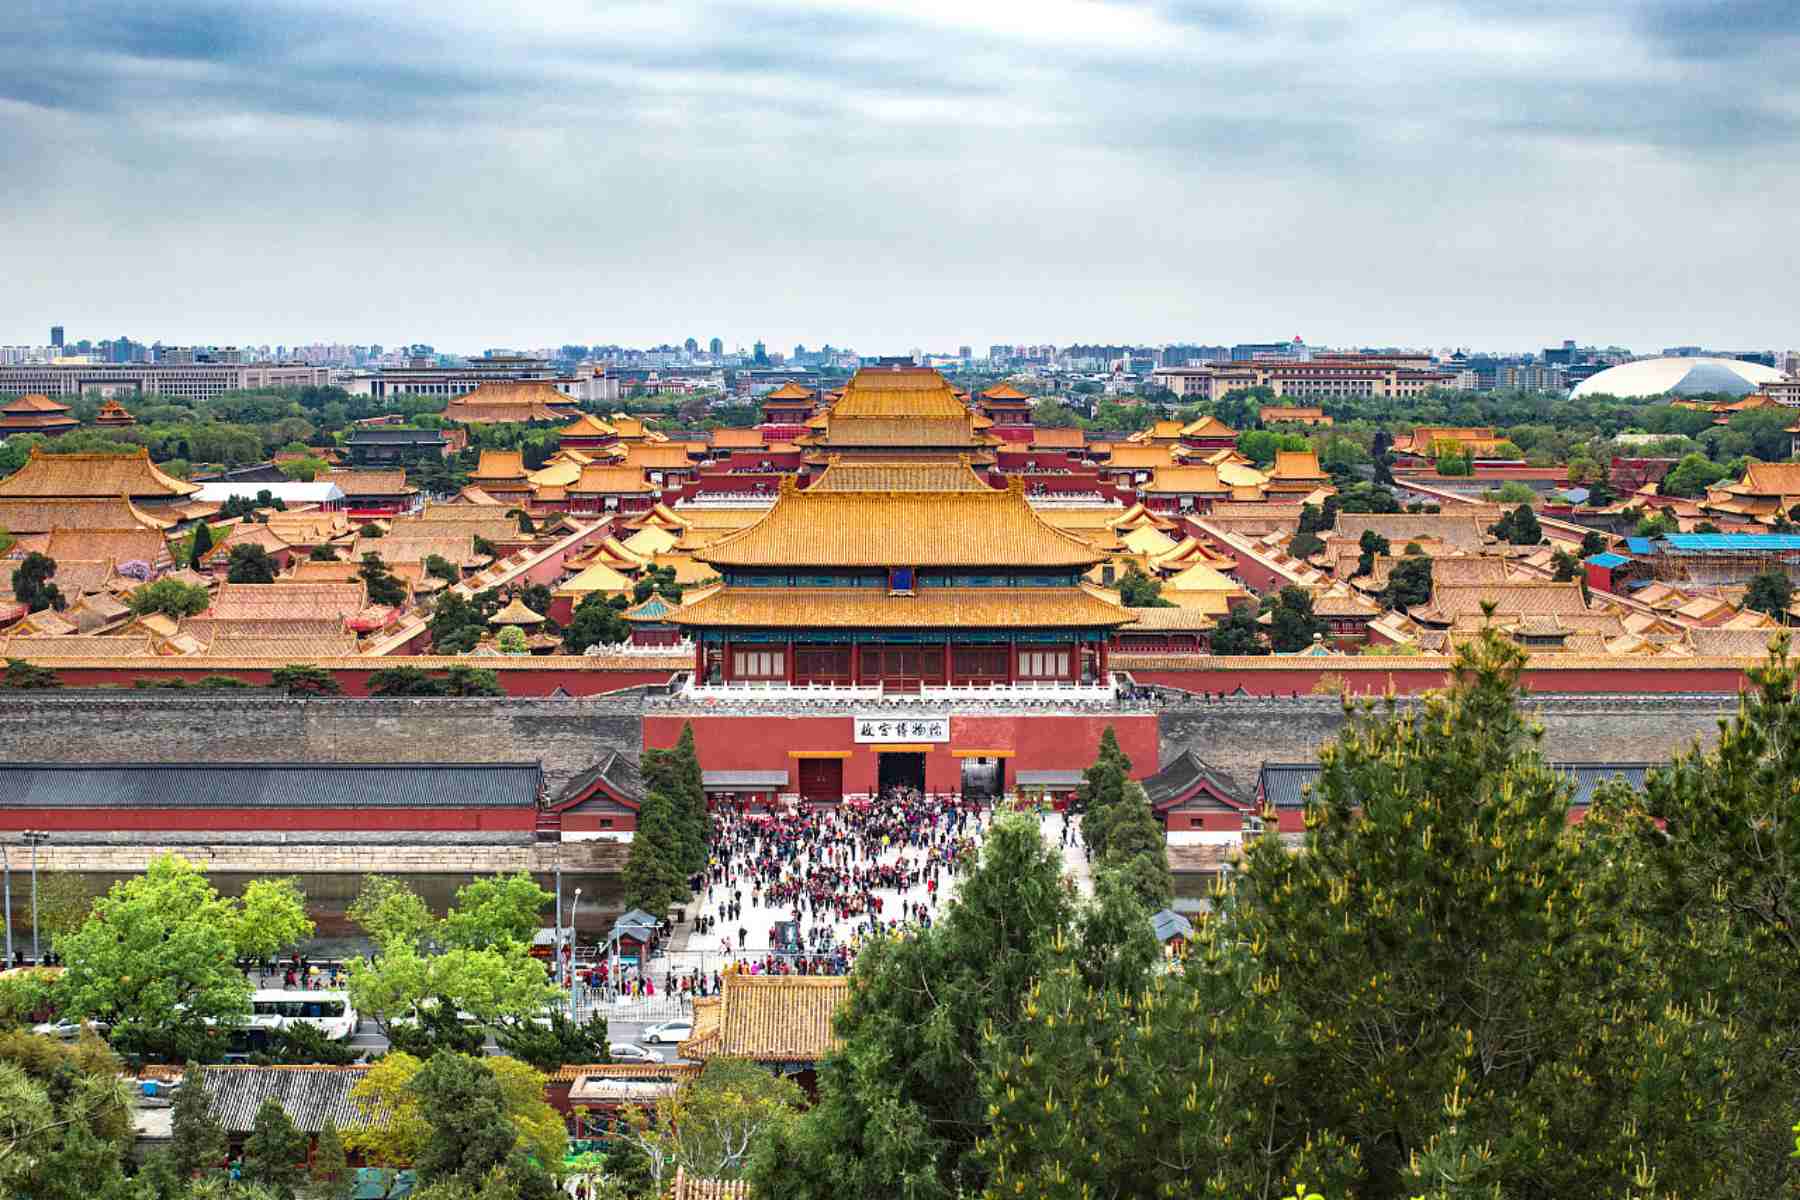 Tiananmen Square, Forbidden City, Temple of Heaven, The Red Theatre